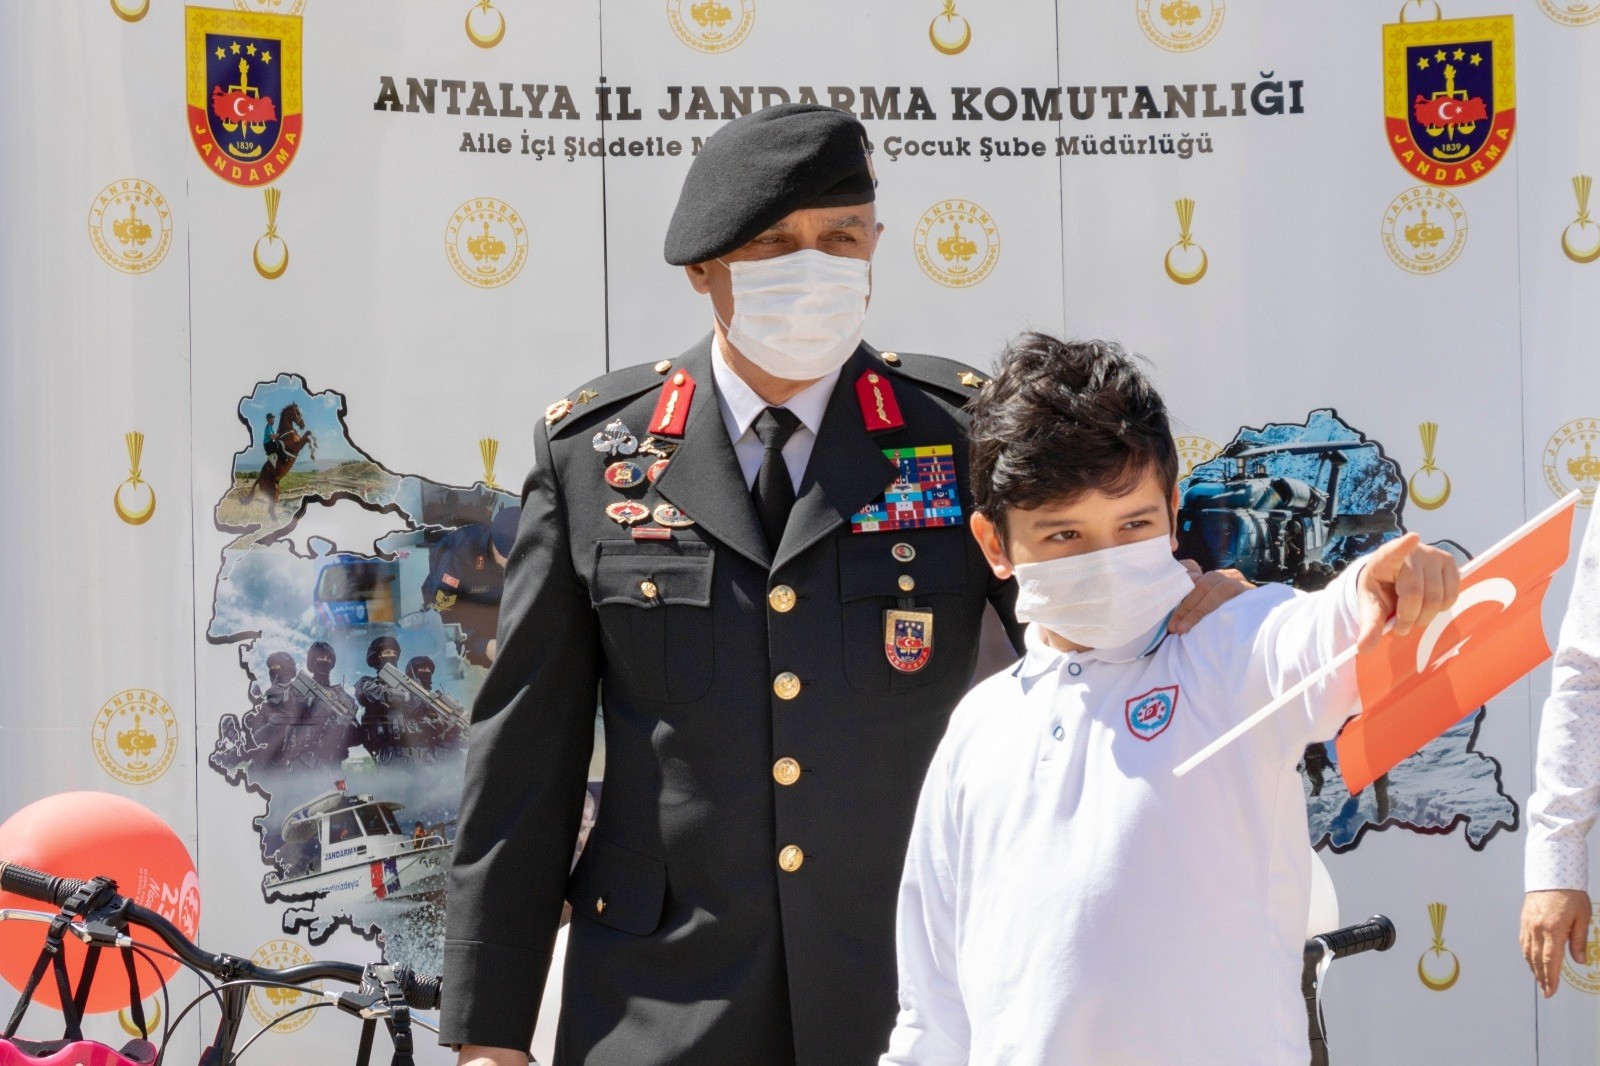  ’23 Nisan’da Çocuk Gözüyle Jandarma ’ konulu resim yarışmasının ödülleri sahiplerini buldu